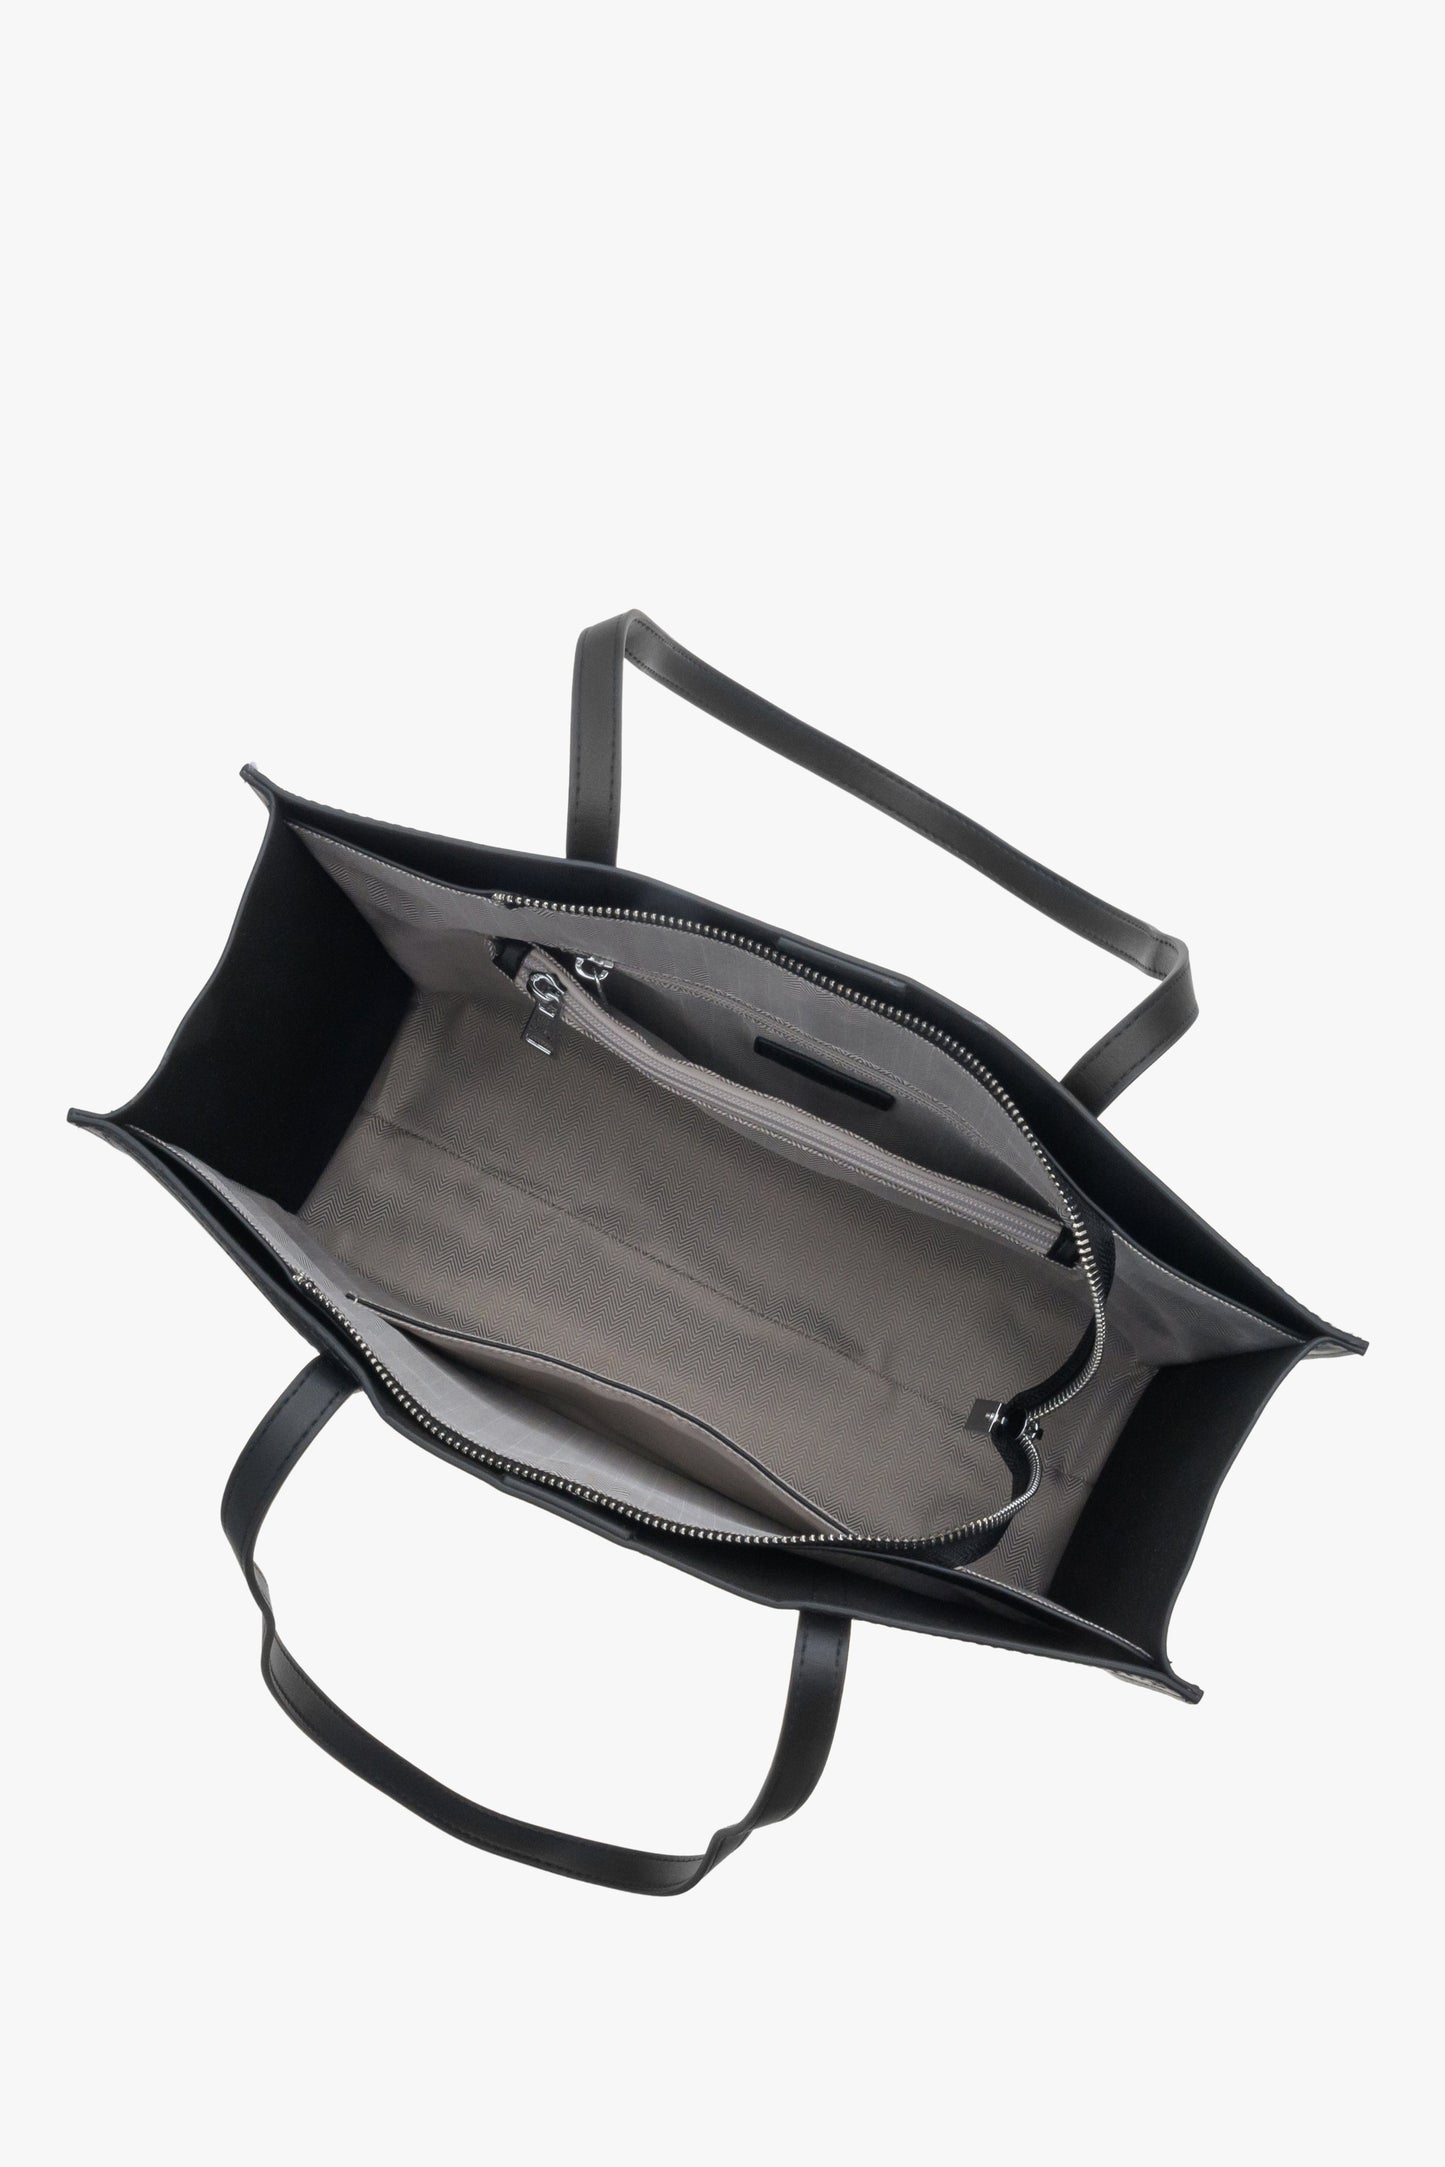 Skórzana, czarna torebka damska typu shopper marki Estro - zbliżenie na wnętrze.